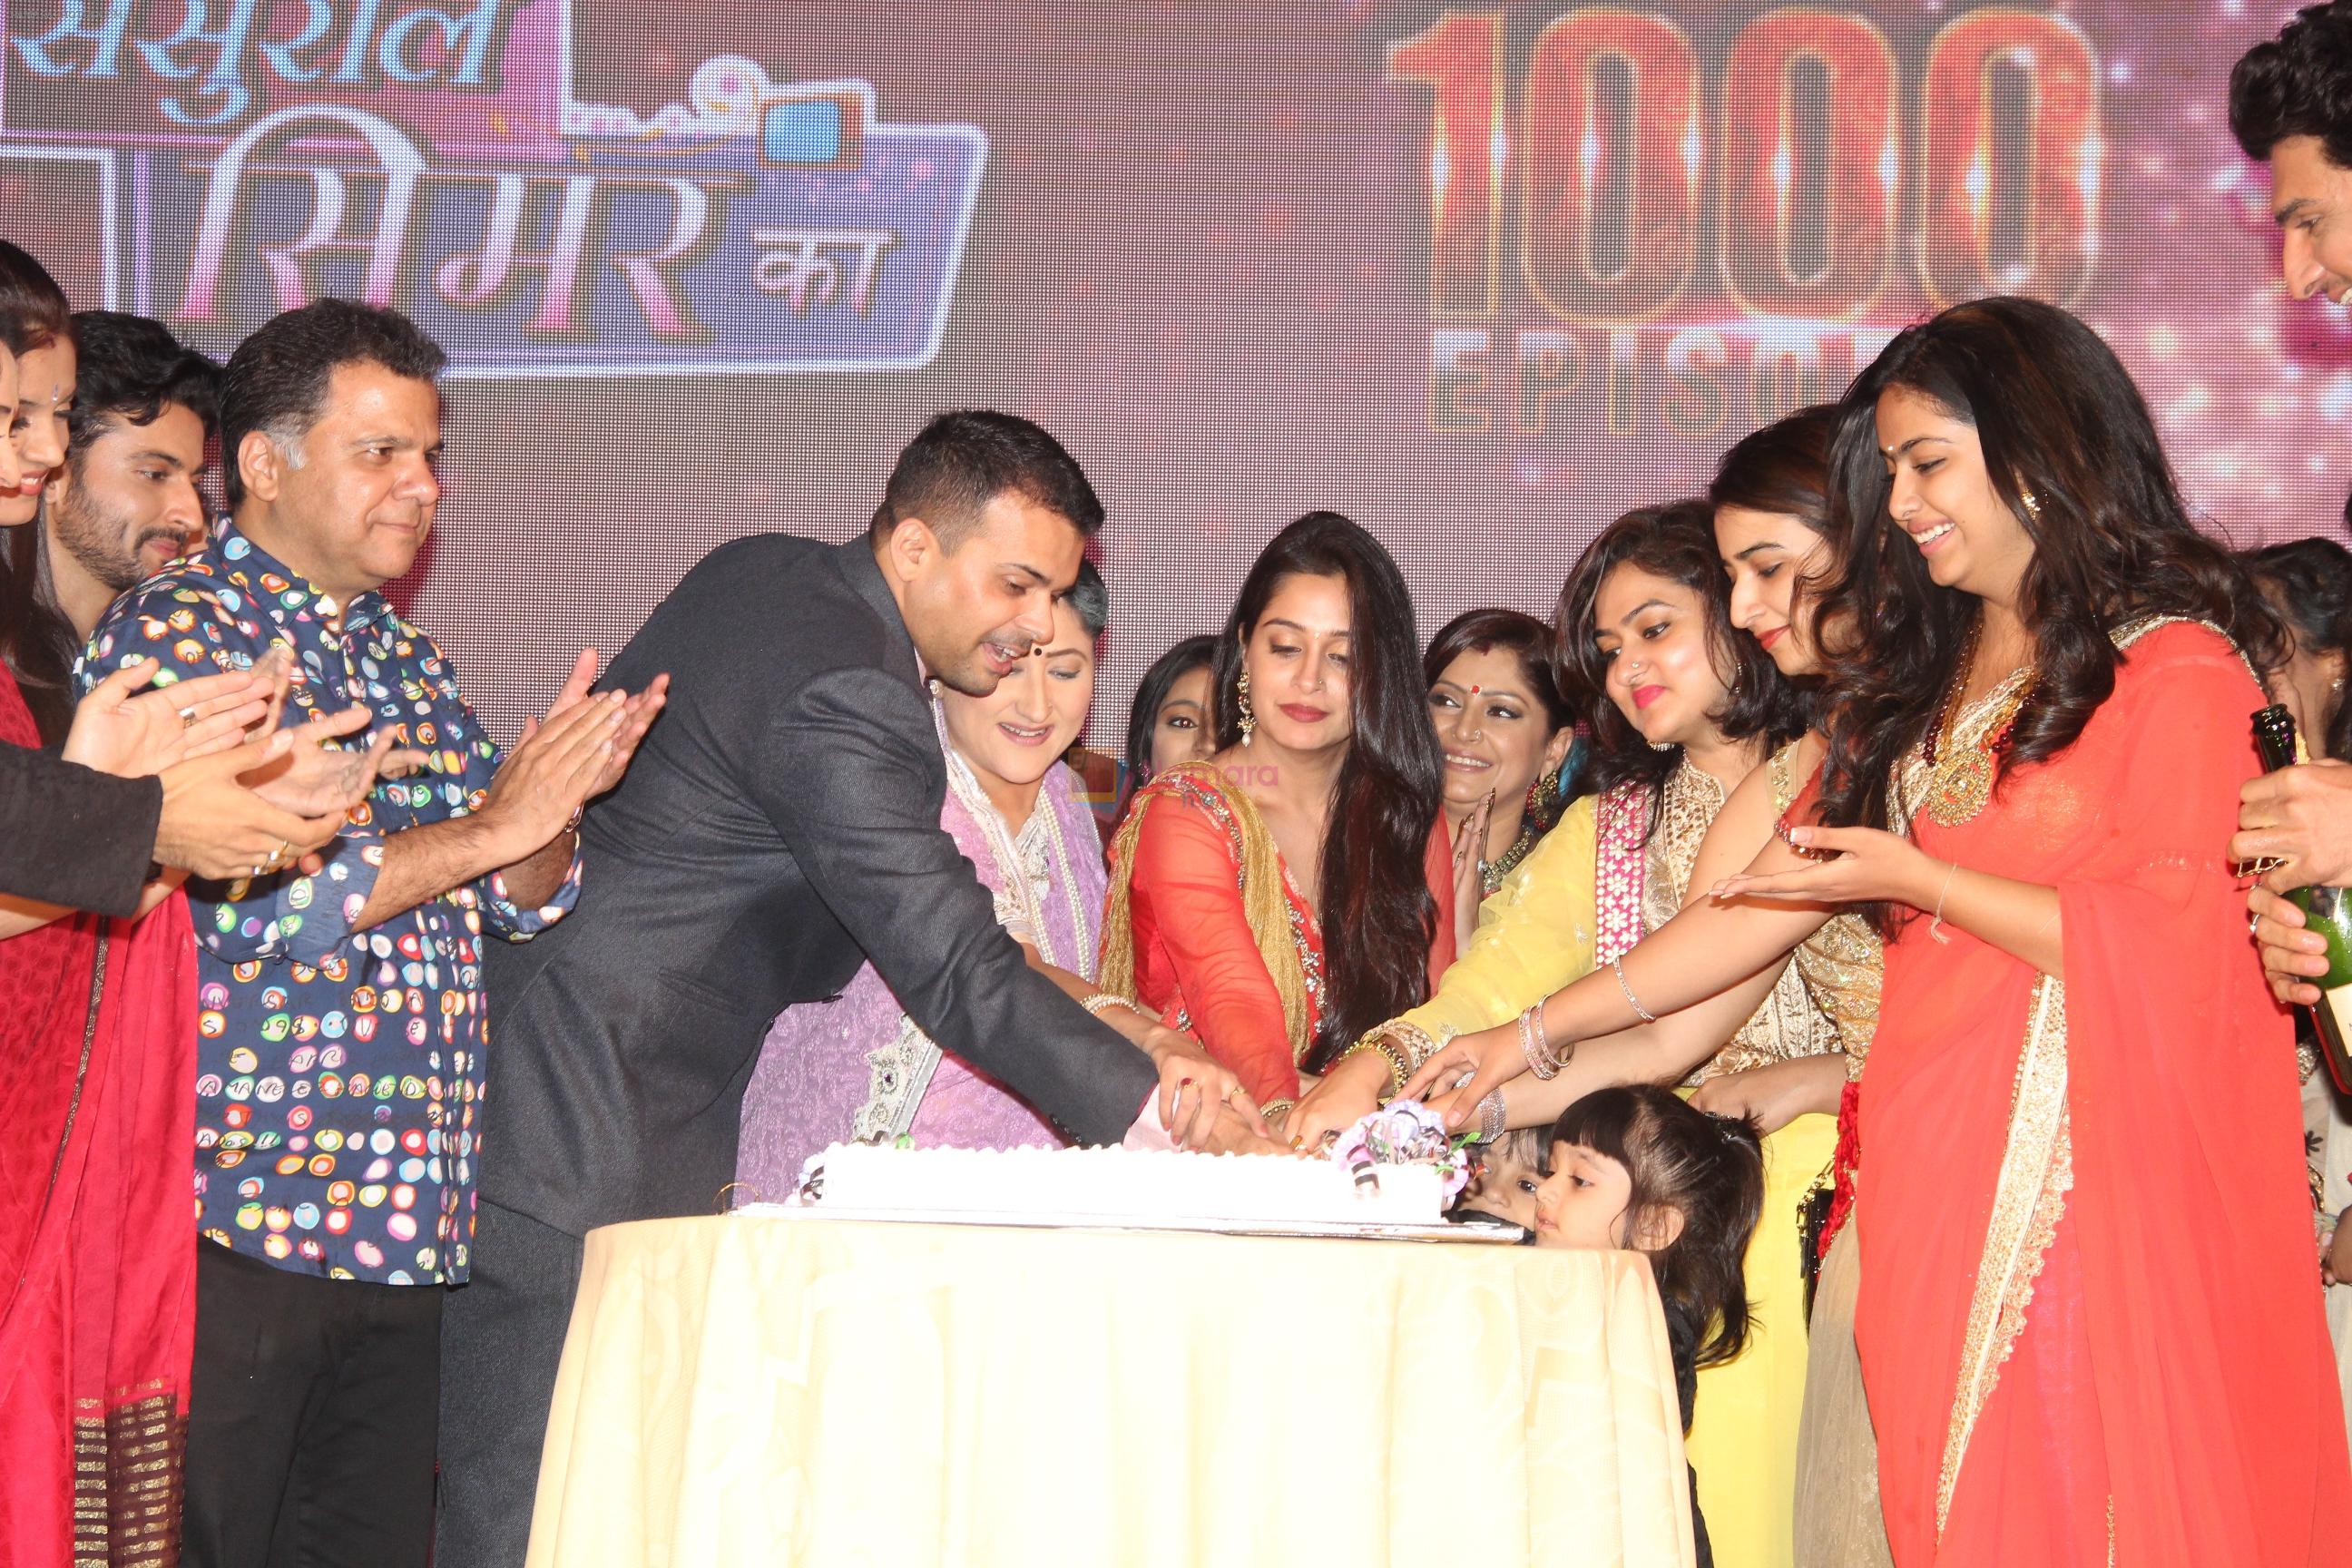 Sasural Simar Ka celebrating on completion of 1000 episodes